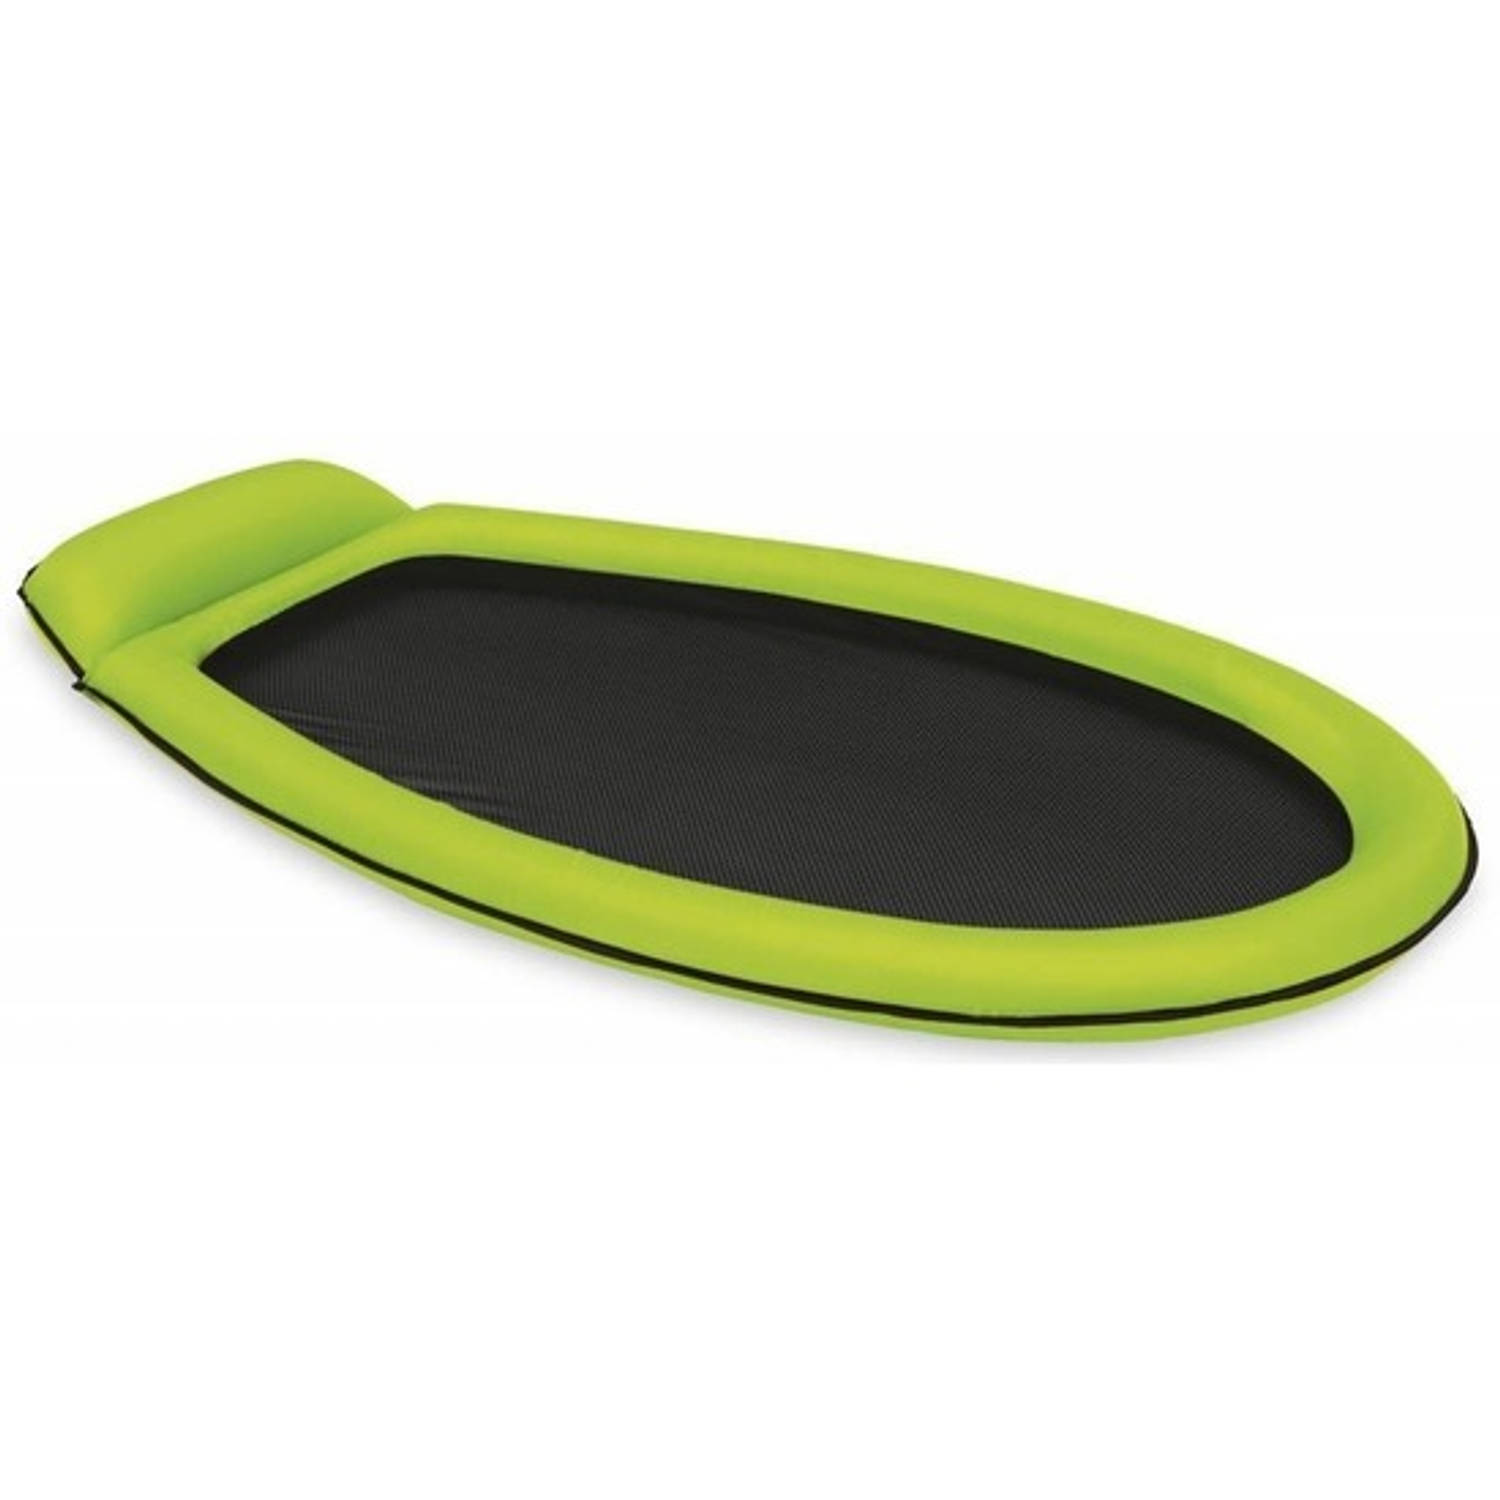 Chip Verhandeling stam Opblaasbaar Intex luchtbed/loungebed groen 178 x 94 cm - Luchtbed (zwembad)  | Blokker